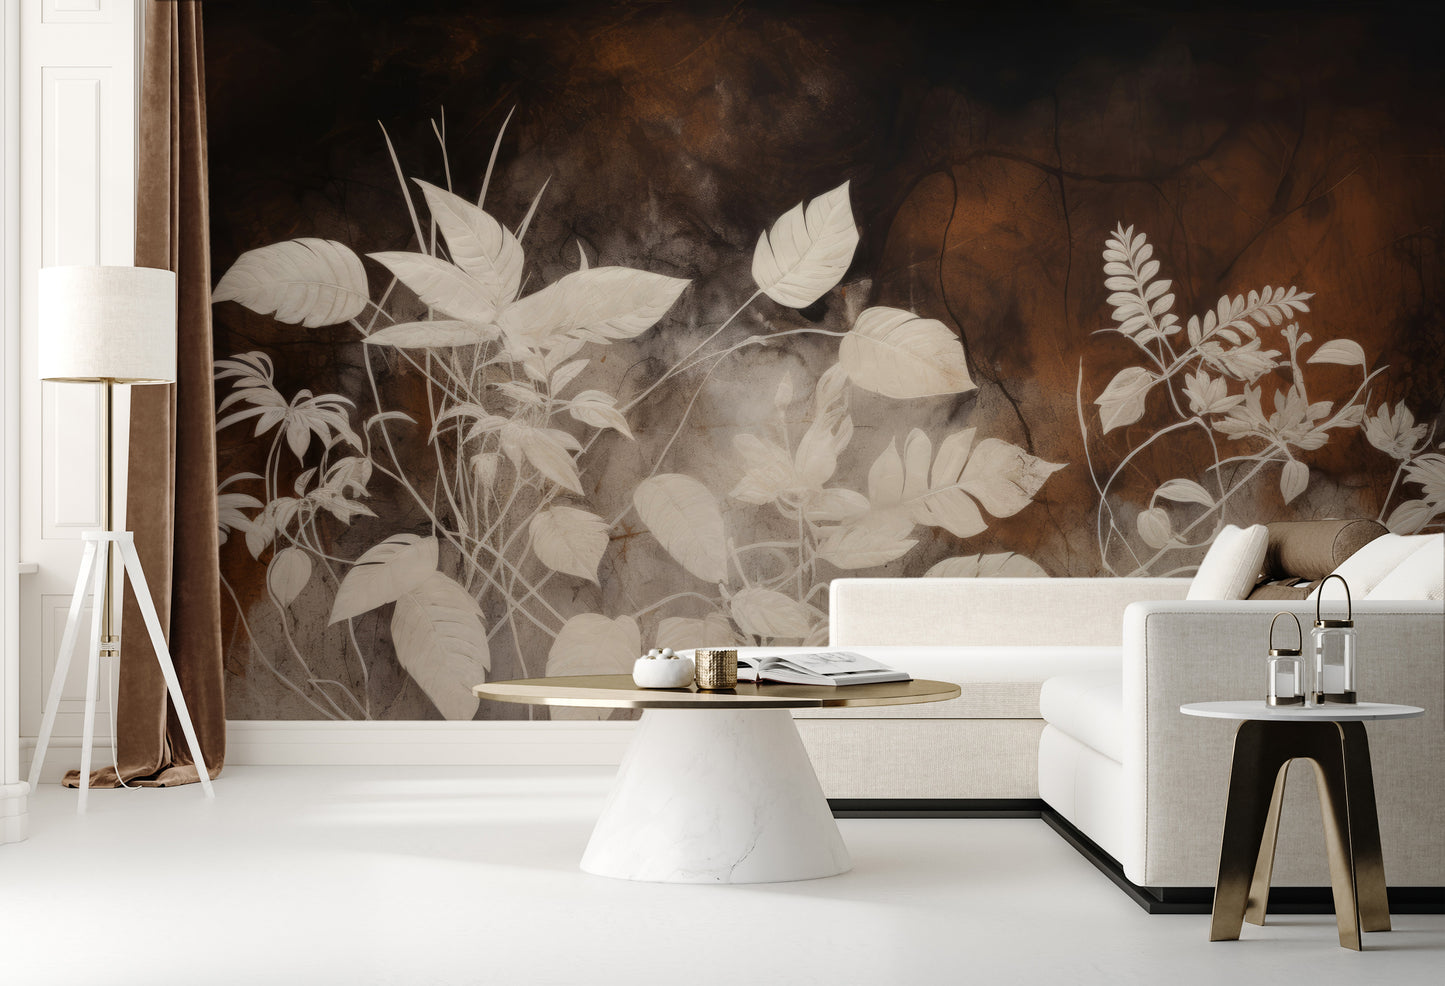 Wzór fototapety artystycznej o nazwie Floral Haze pokazanej w aranżacji wnętrza.